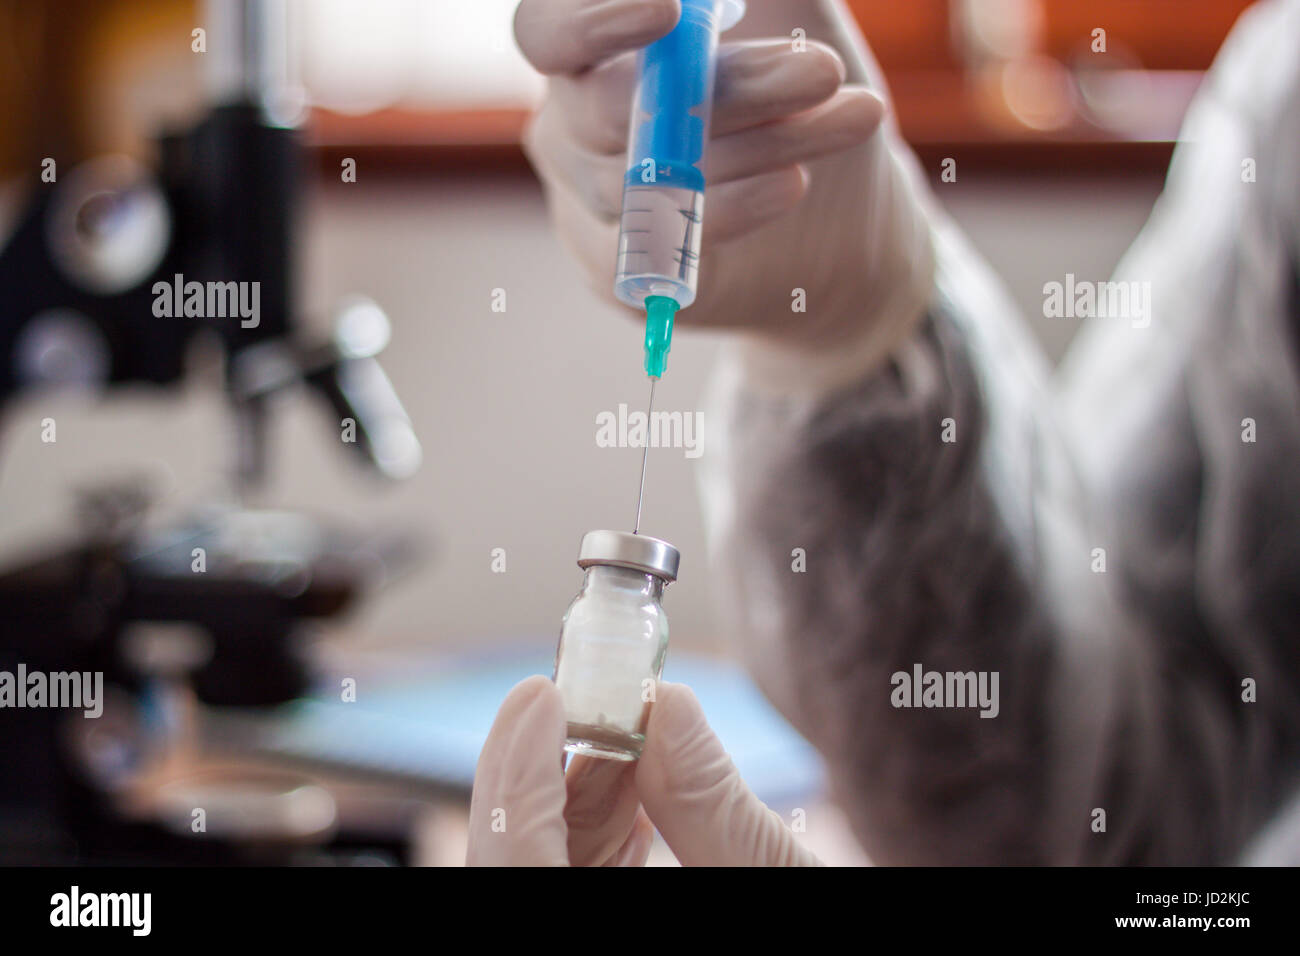 Junger Arzt bereitet eine Injektion zu einem Patienten, der injizierten Flüssigkeit in die Nadel halten sehr sorgfältig Stockfoto